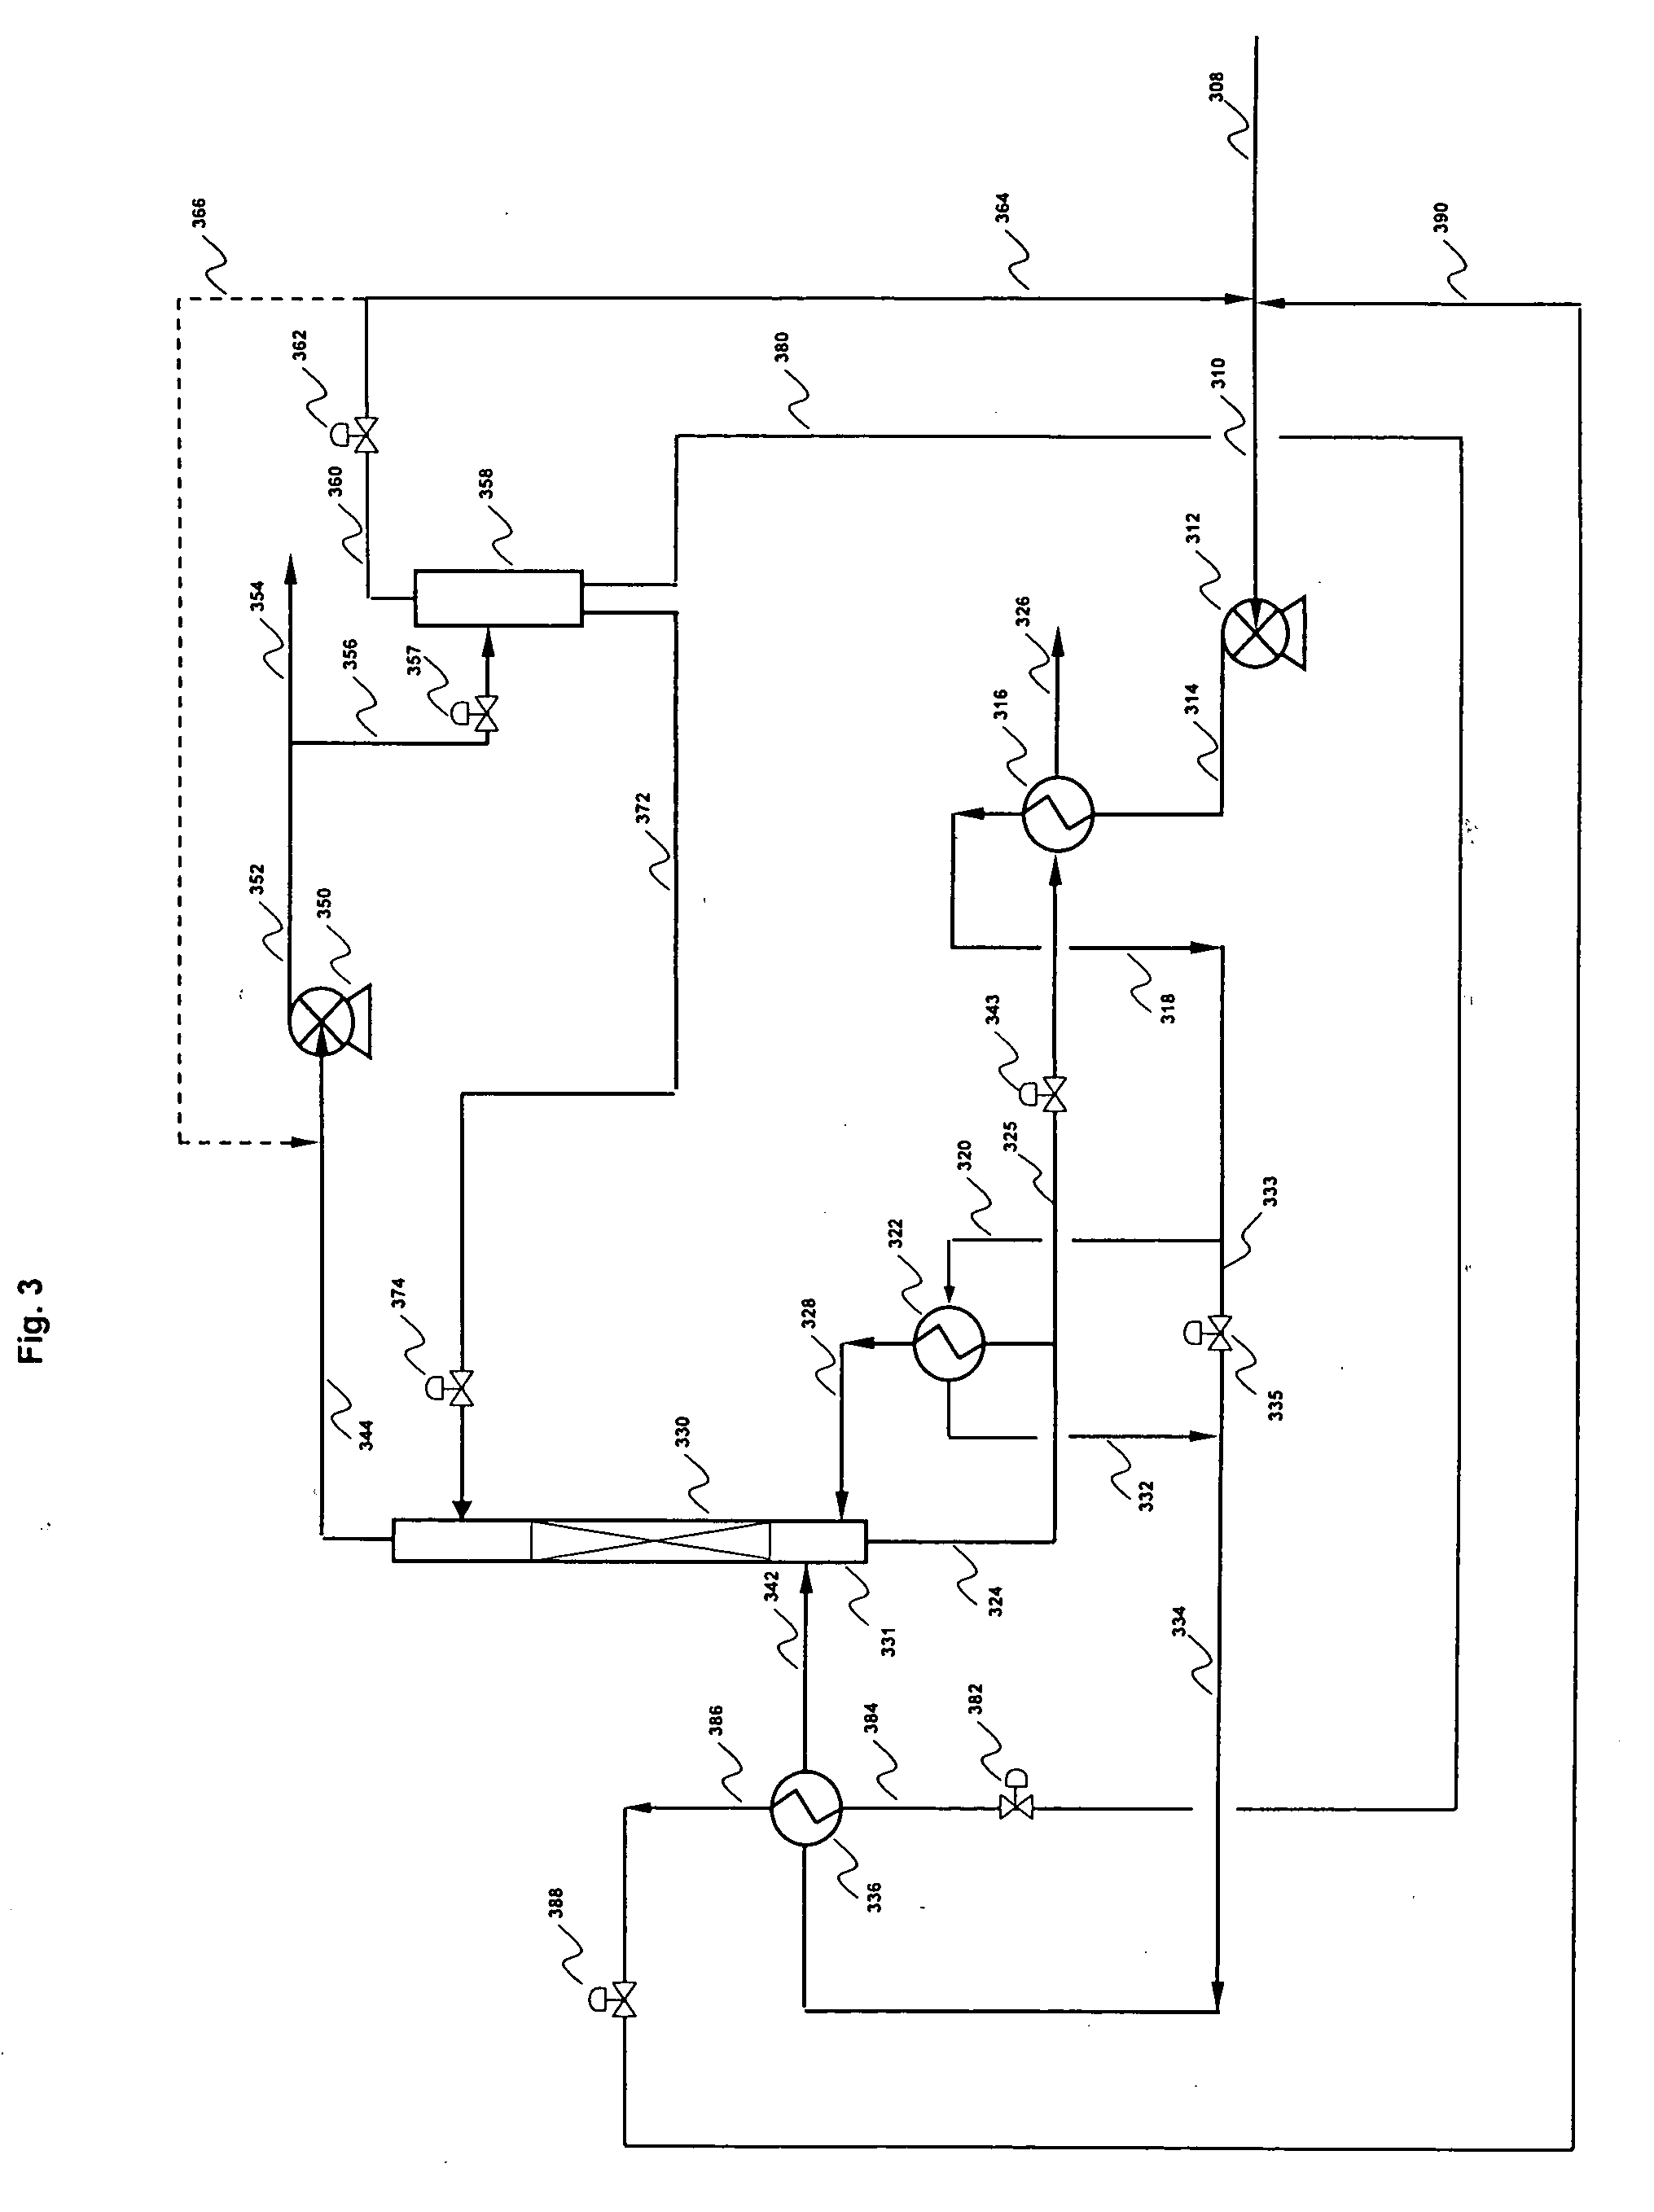 Removal of methyl mercaptan from gas streams